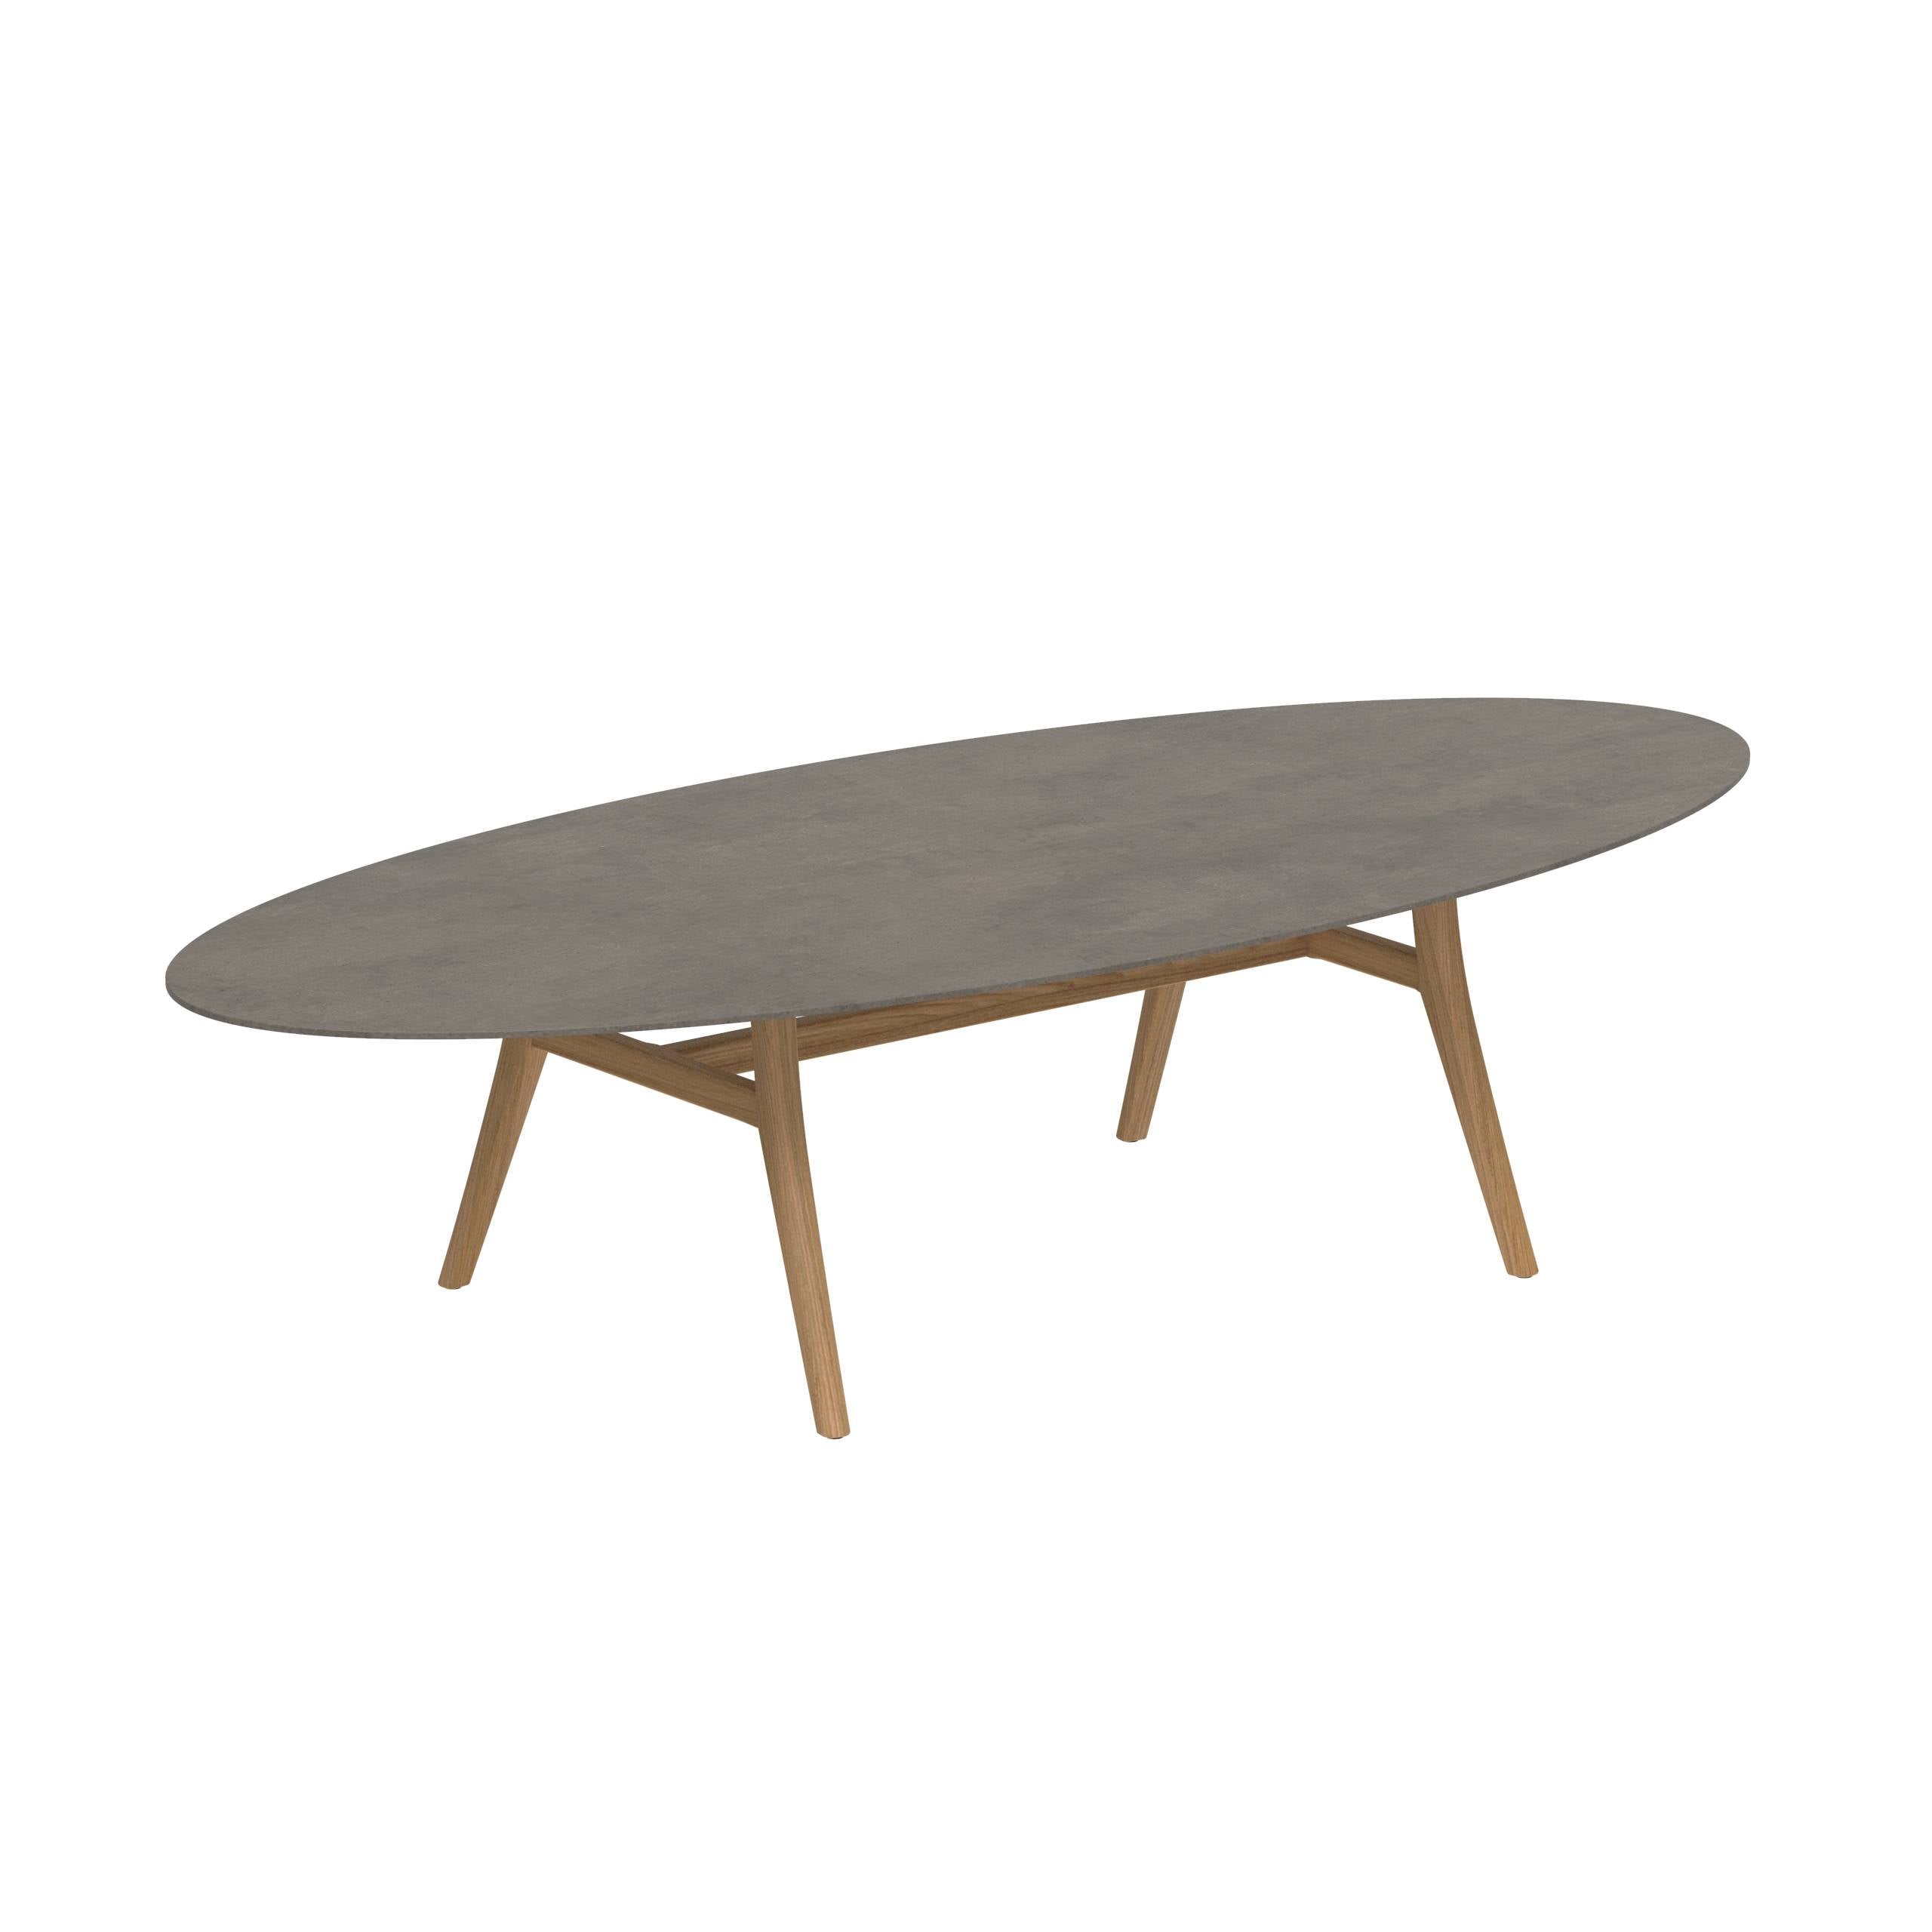 Zidiz Table 320x140cm Teak Legs - Table Top Ceramic Terra Marrone